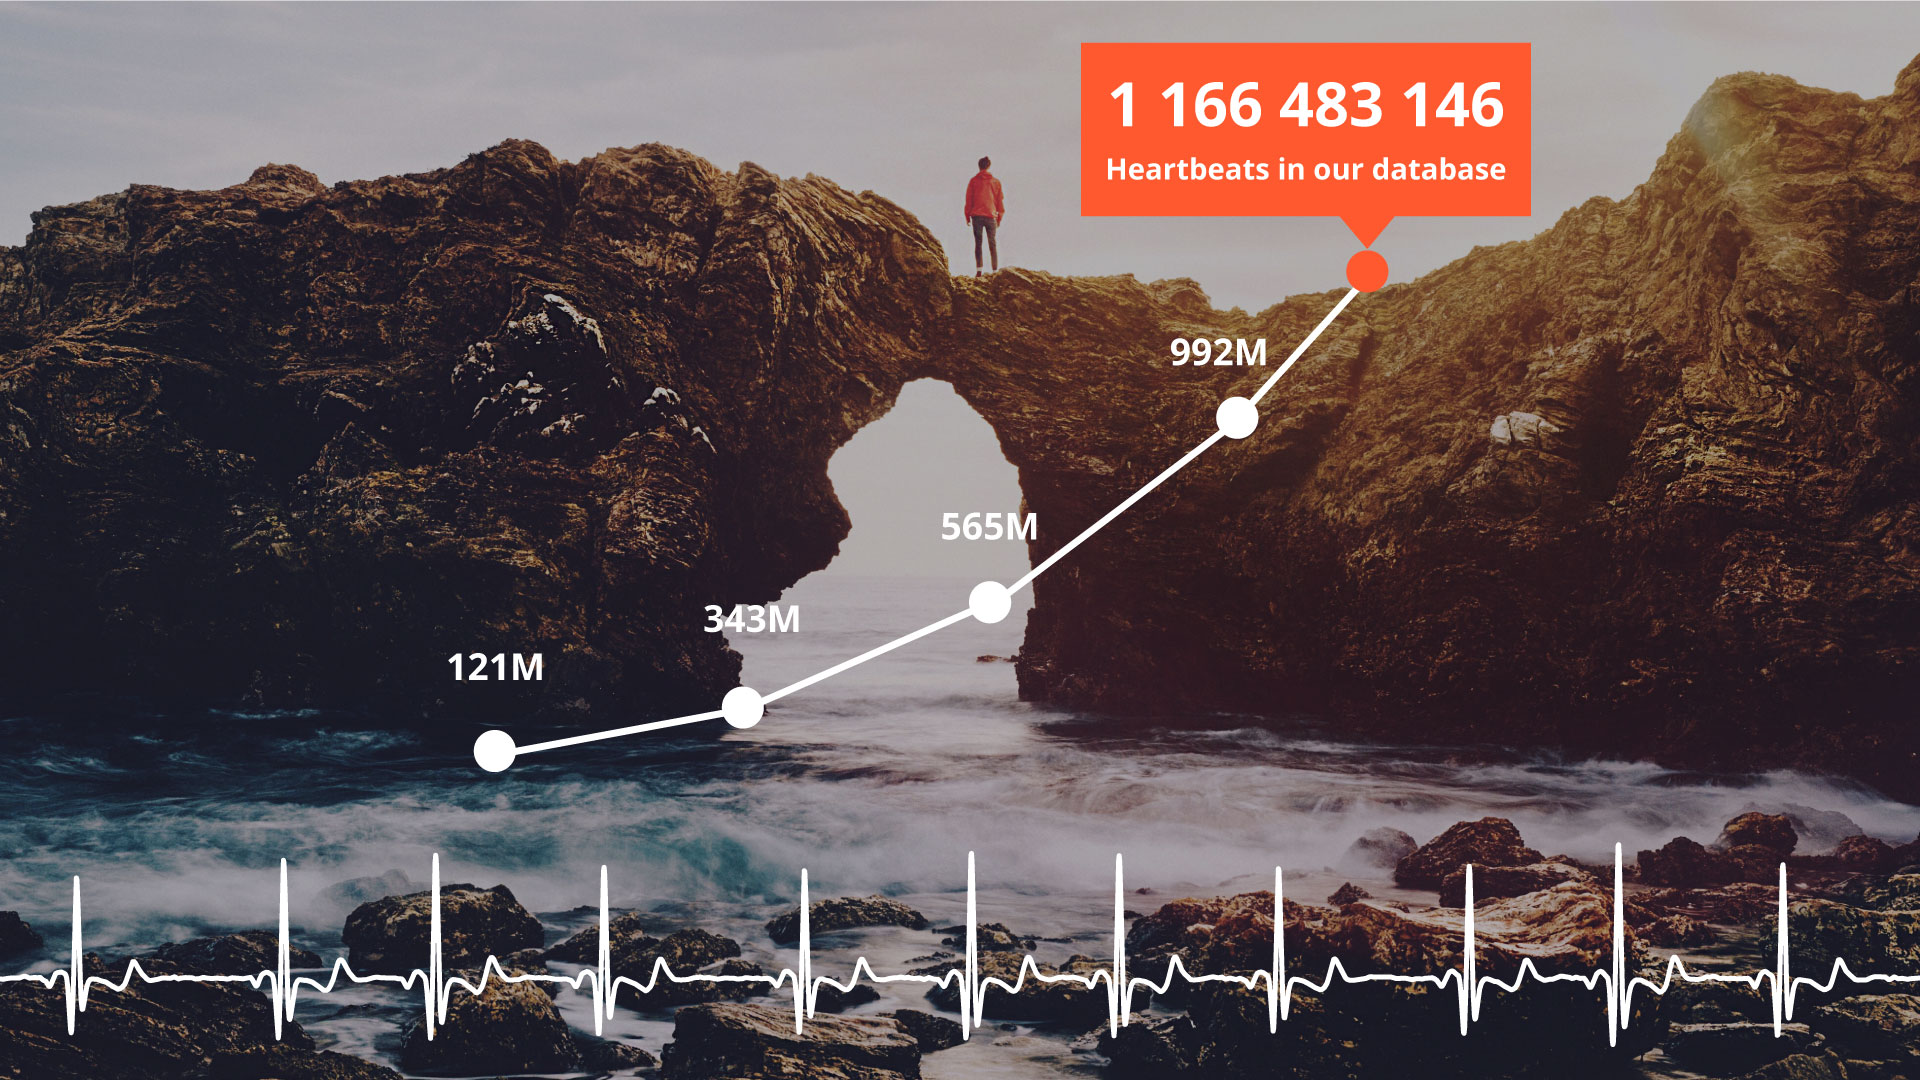 Över en miljard hjärtslag i Linkuras EKG-databas